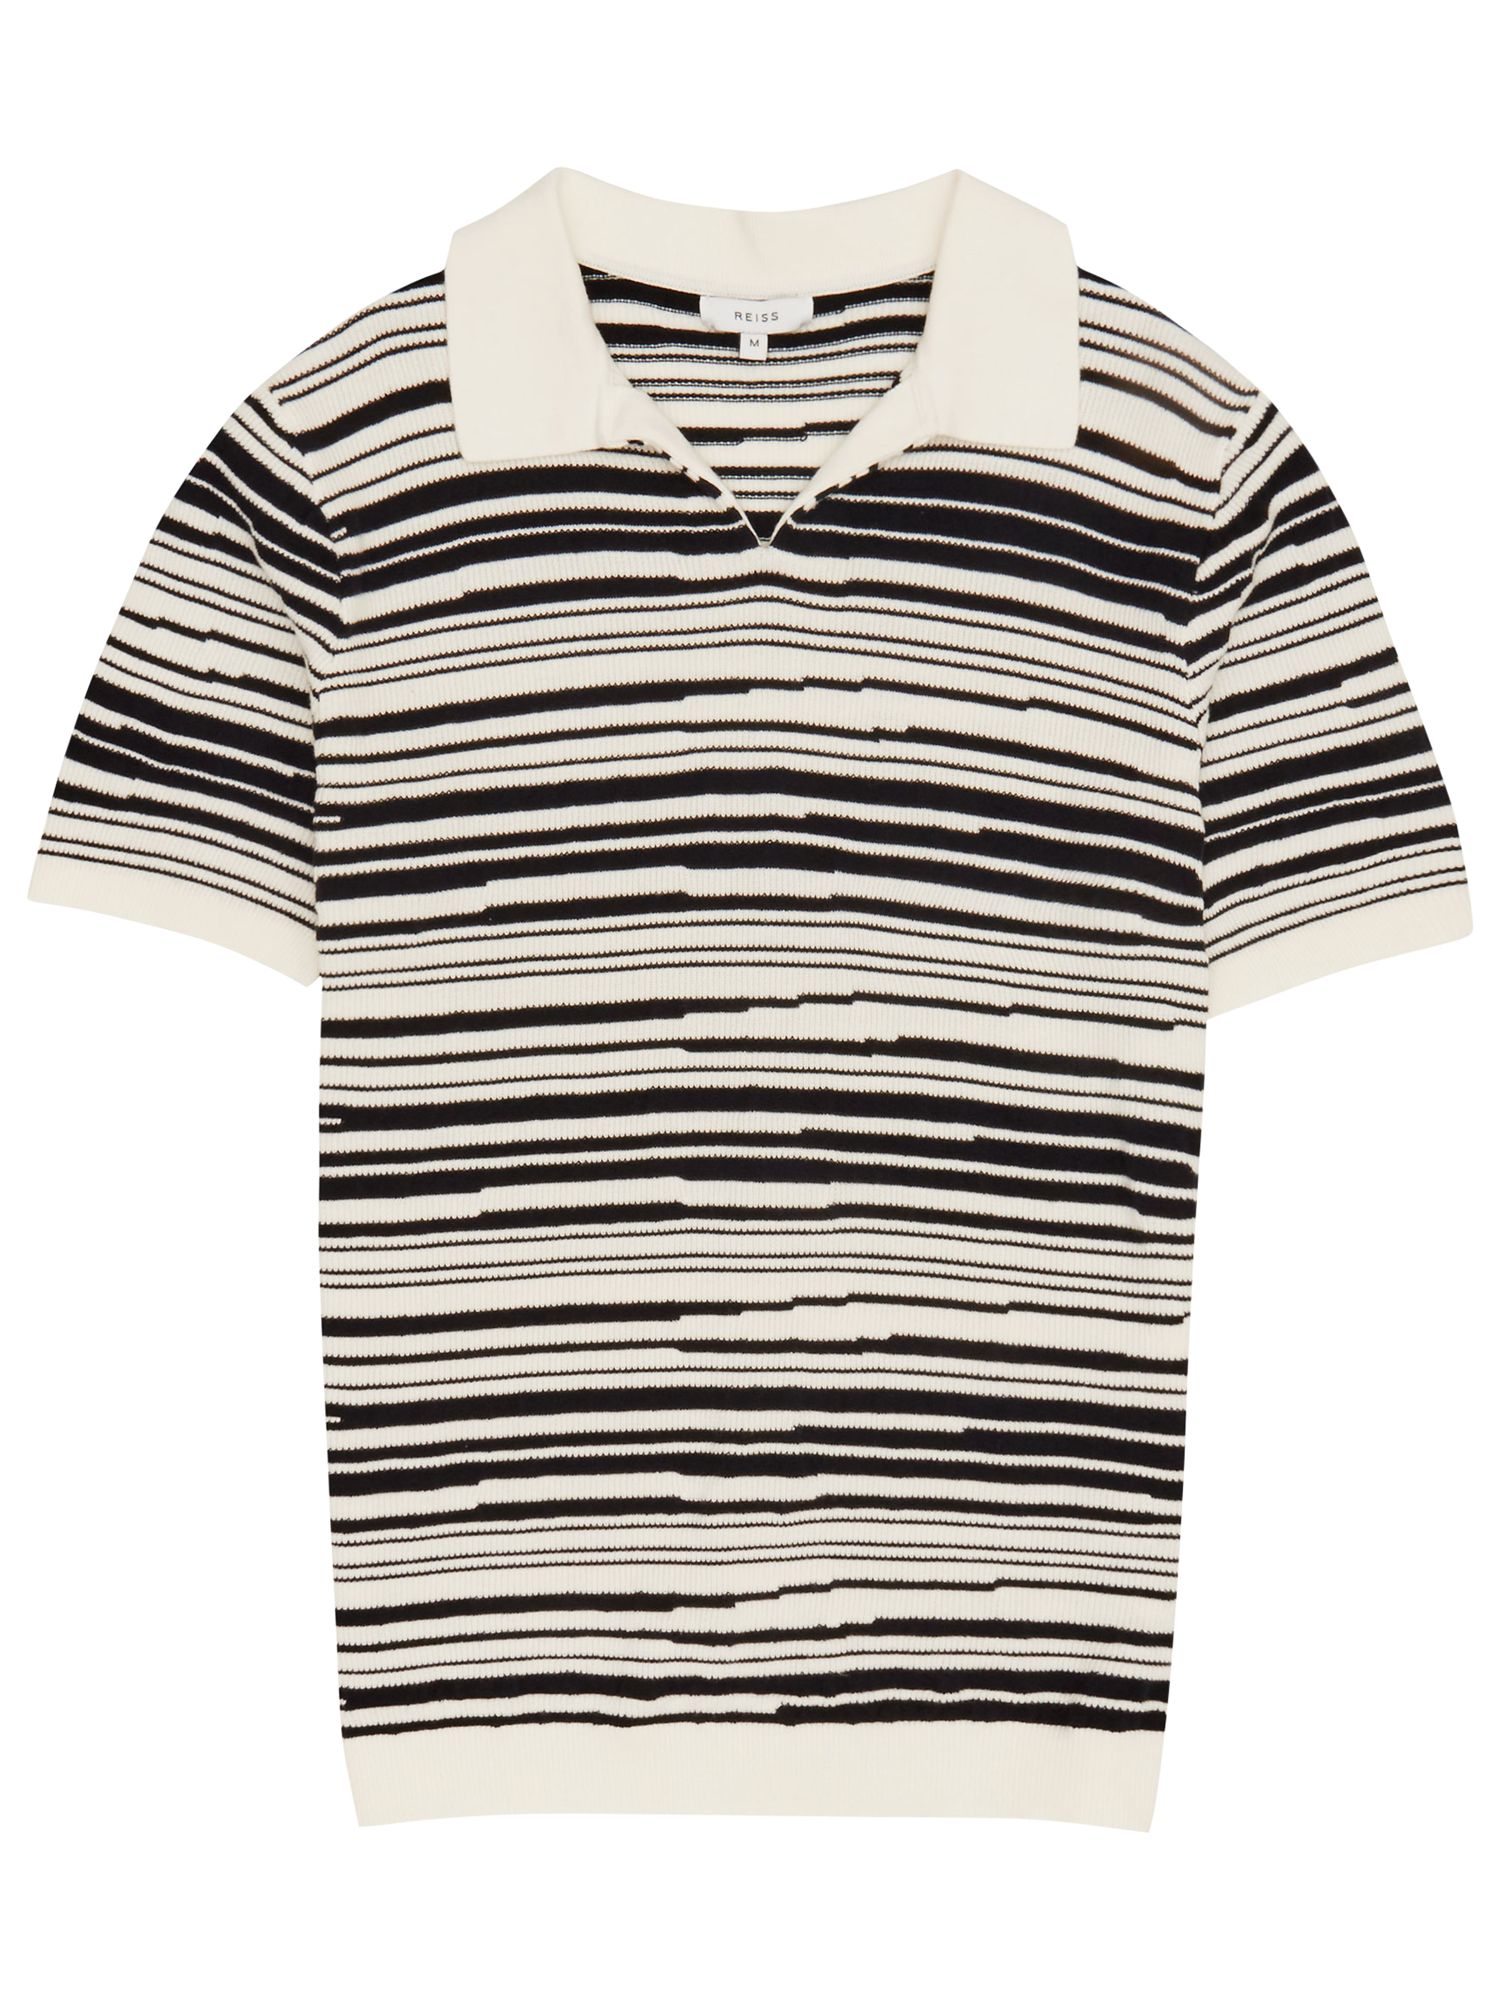 Reiss Metro Blurred Stripe Polo Shirt, Off White/Navy